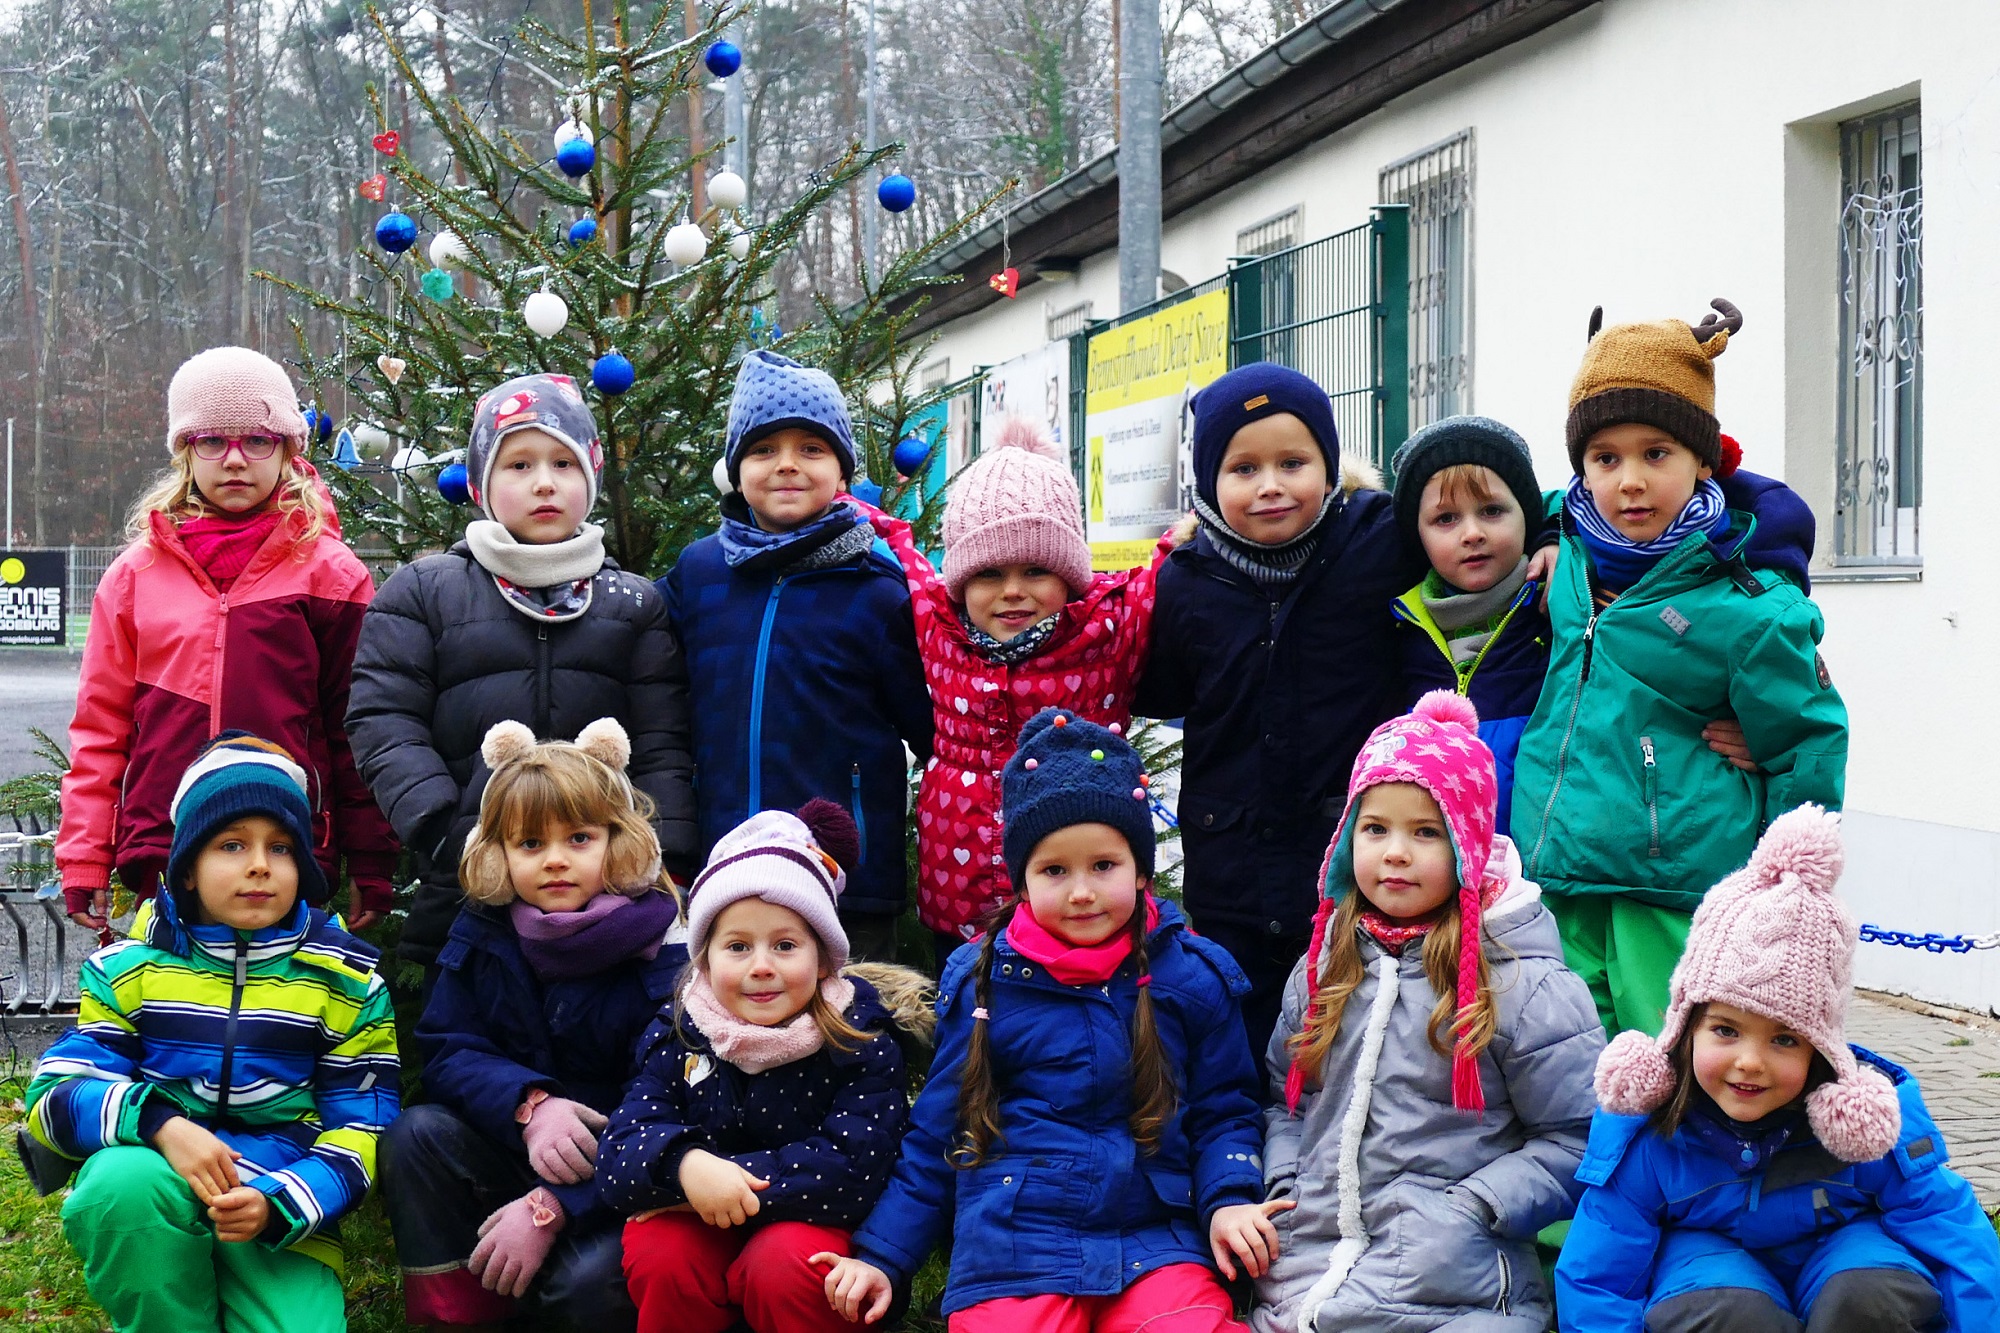 Weihnachten kann kommen! Die Tanne auf dem Vereinsgelände des SV Blau-Weiß-Dölau ist nun weihnachtlich geschmückt! 